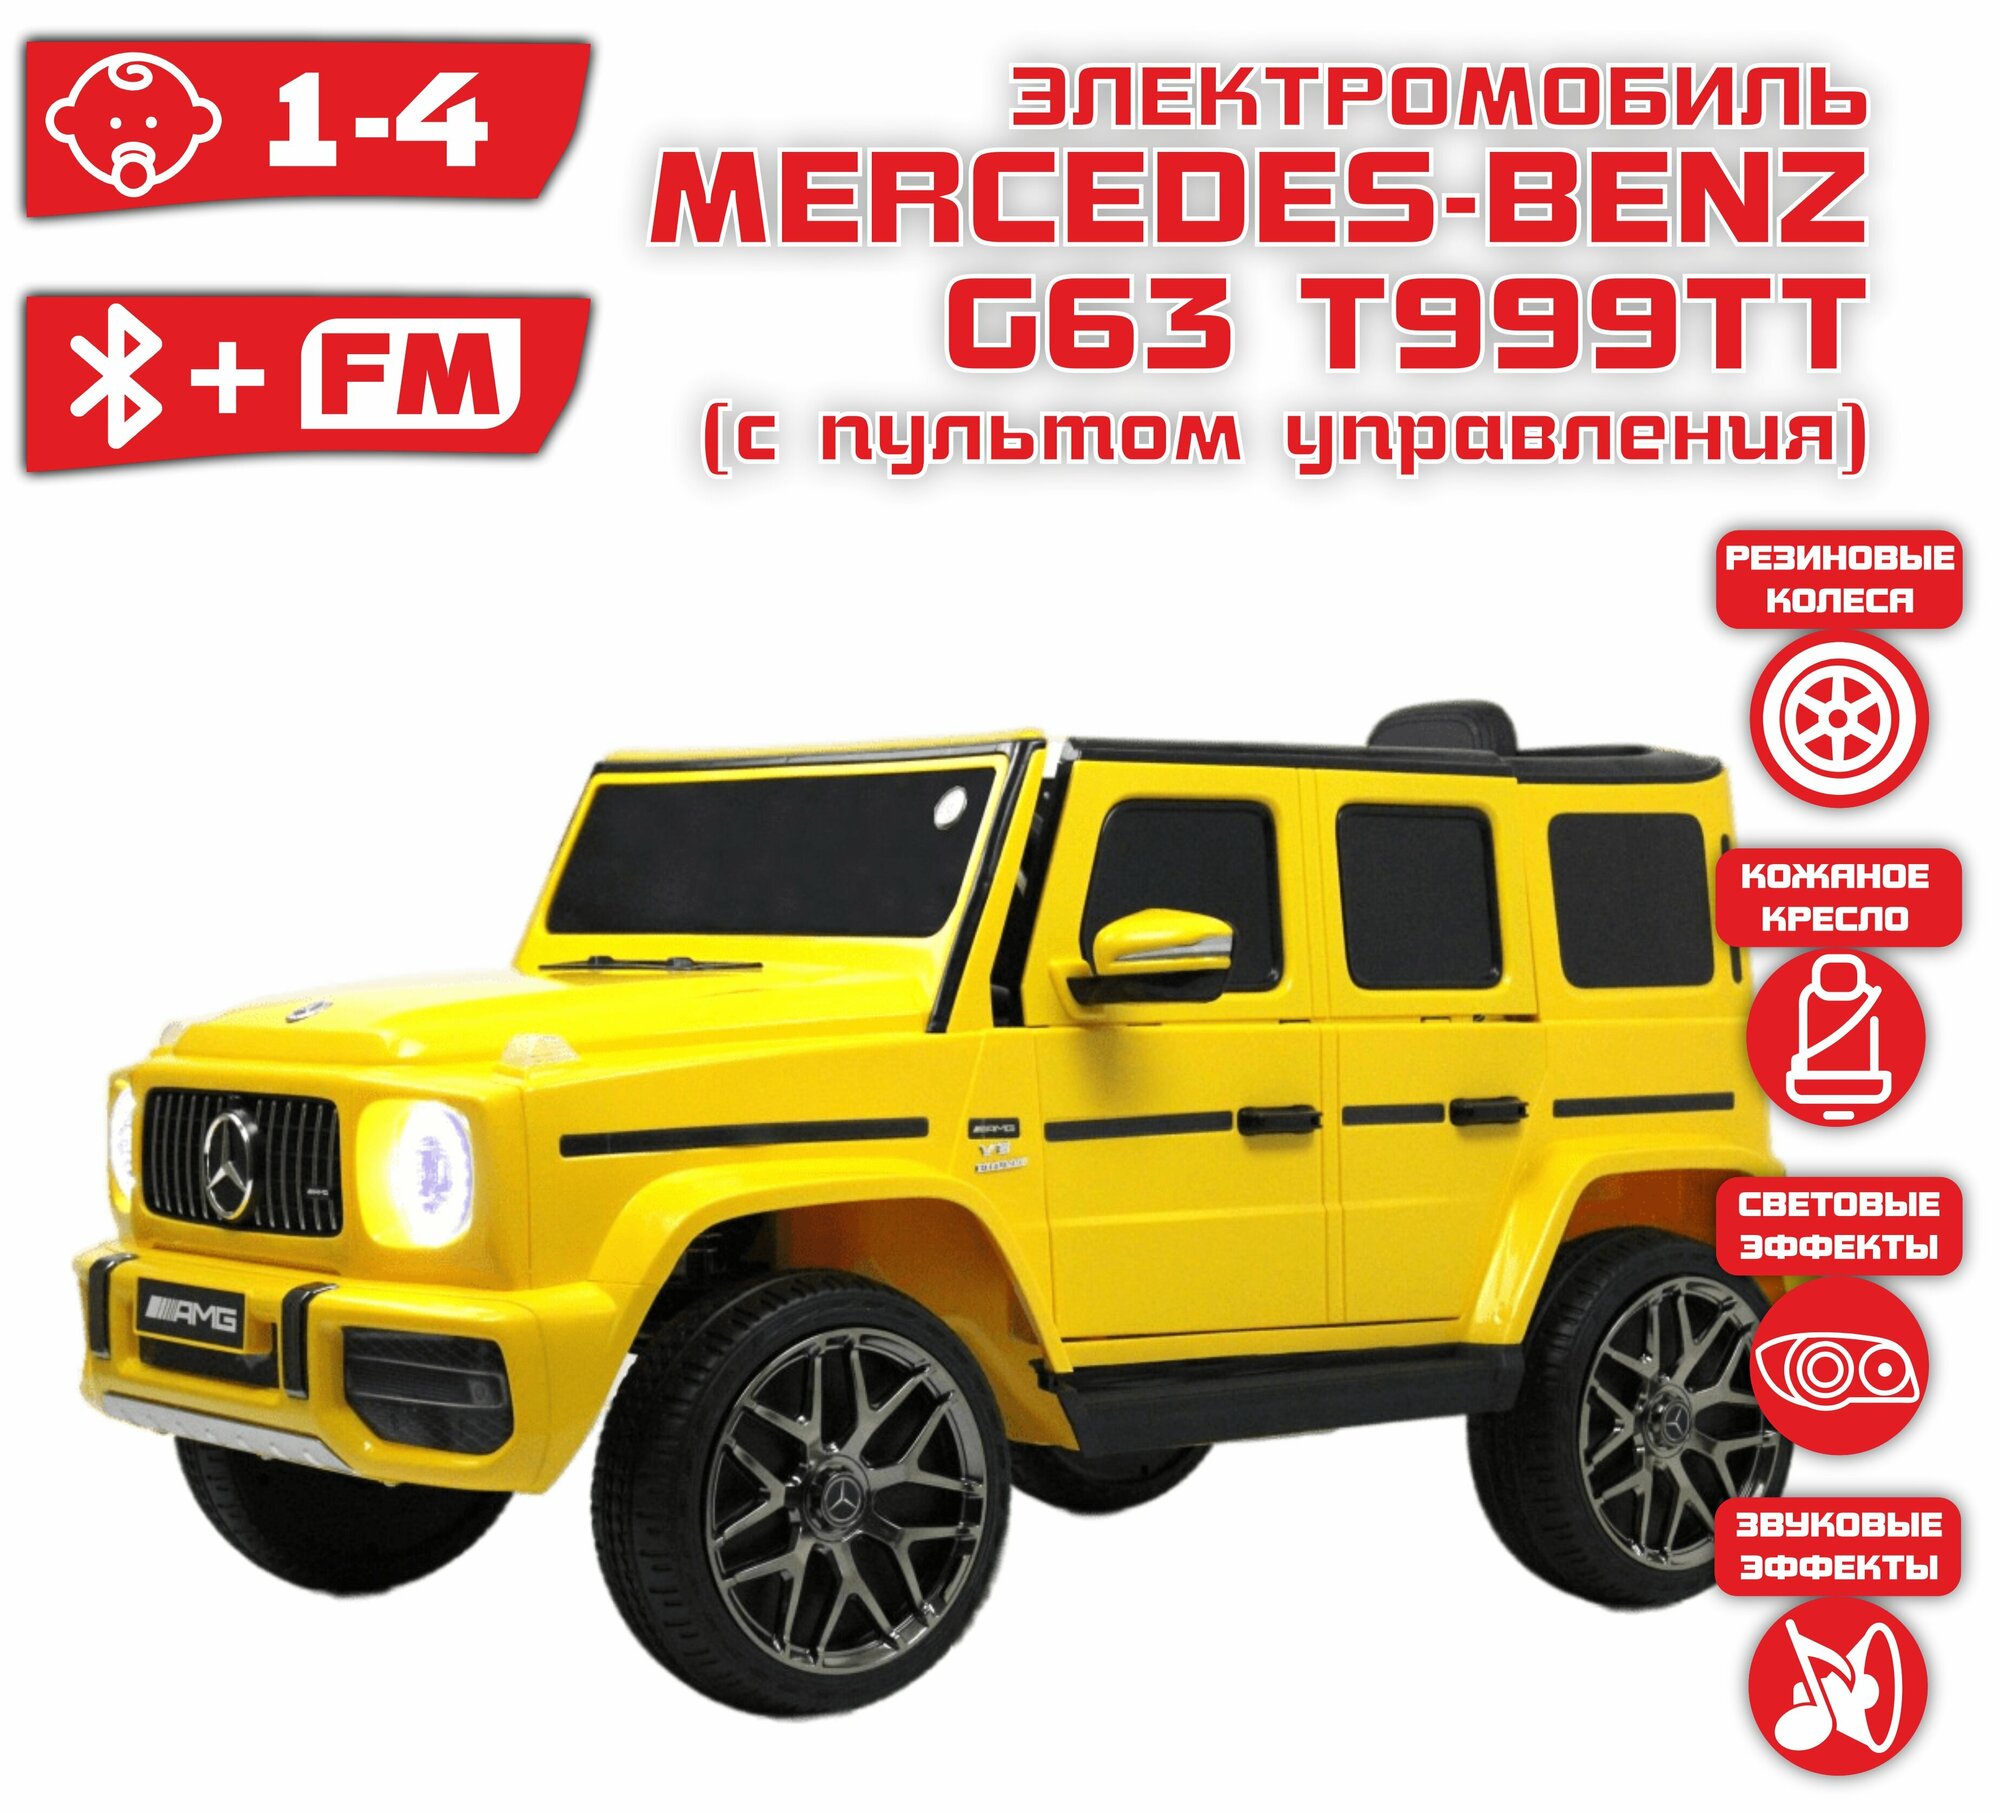 Детский электромобиль RiverToys Mercedes-Benz G63 T999TT Желтый